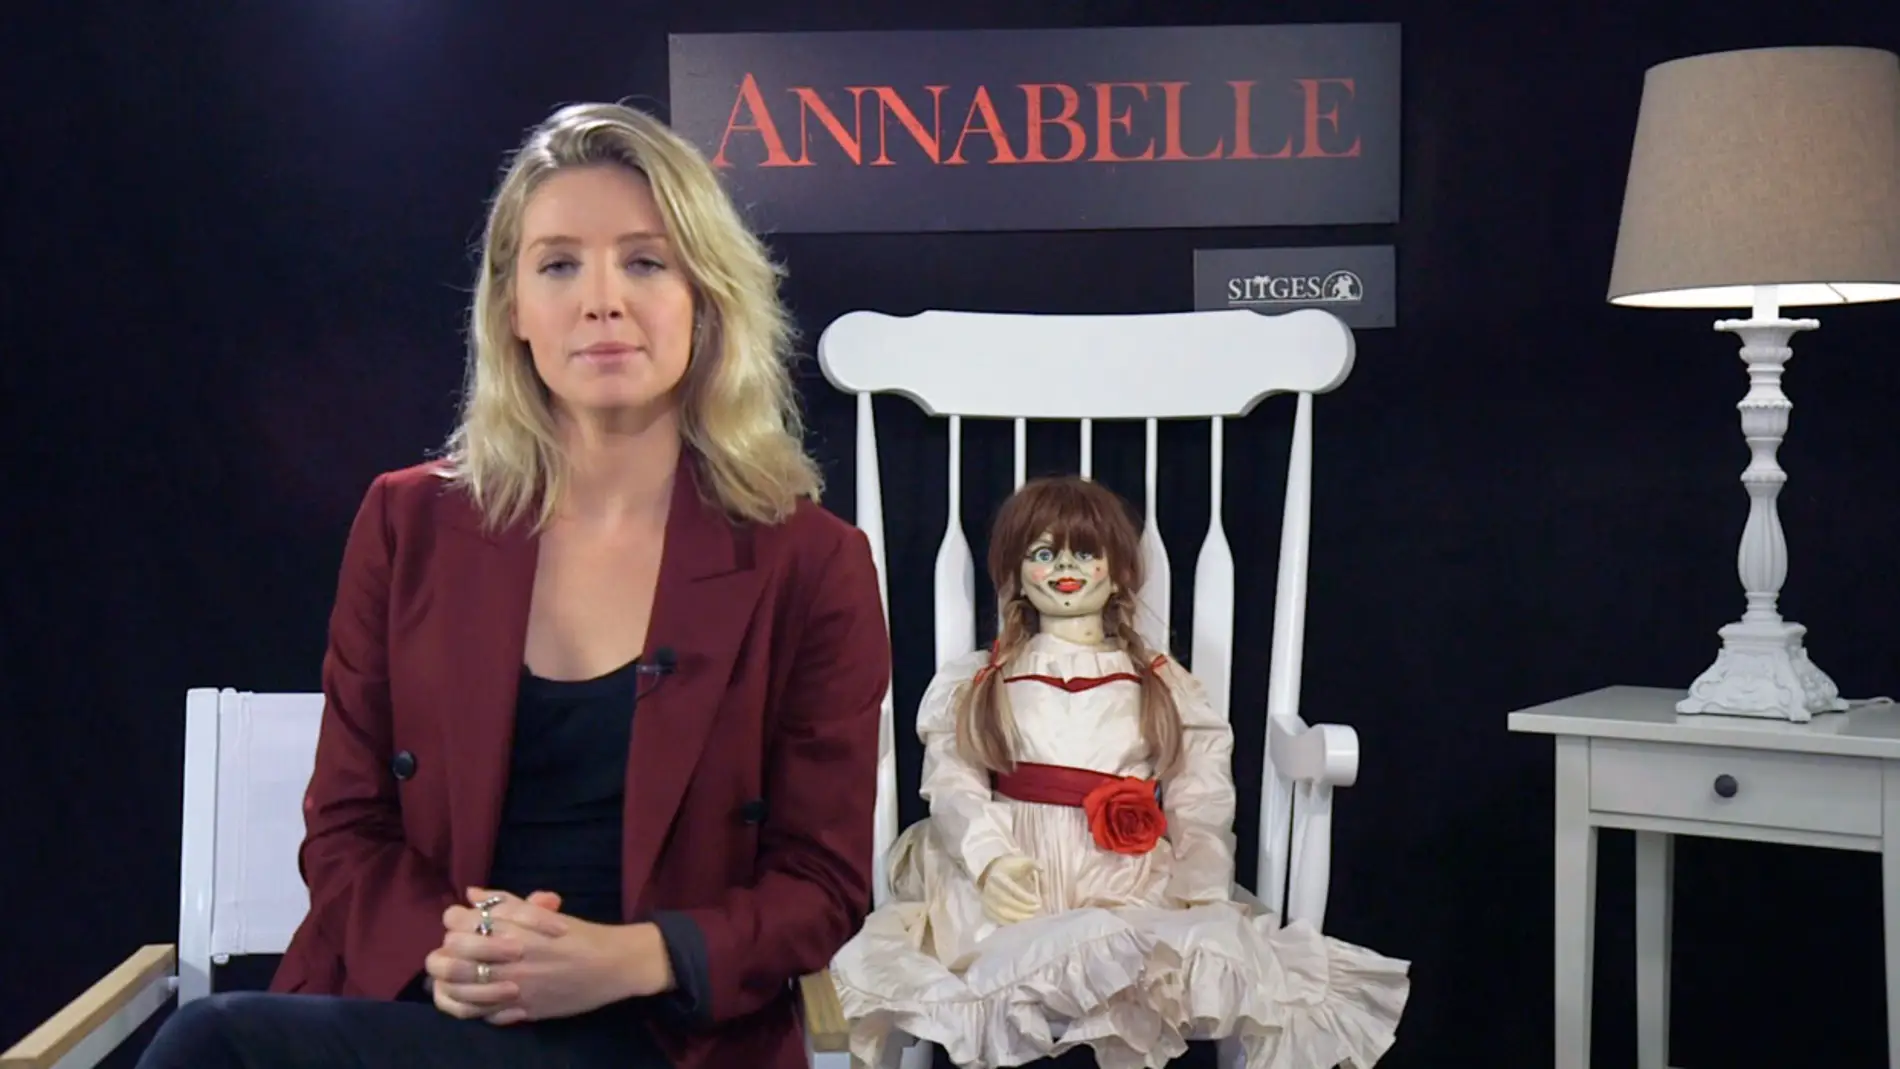 Entrevista a Annabelle Wallis